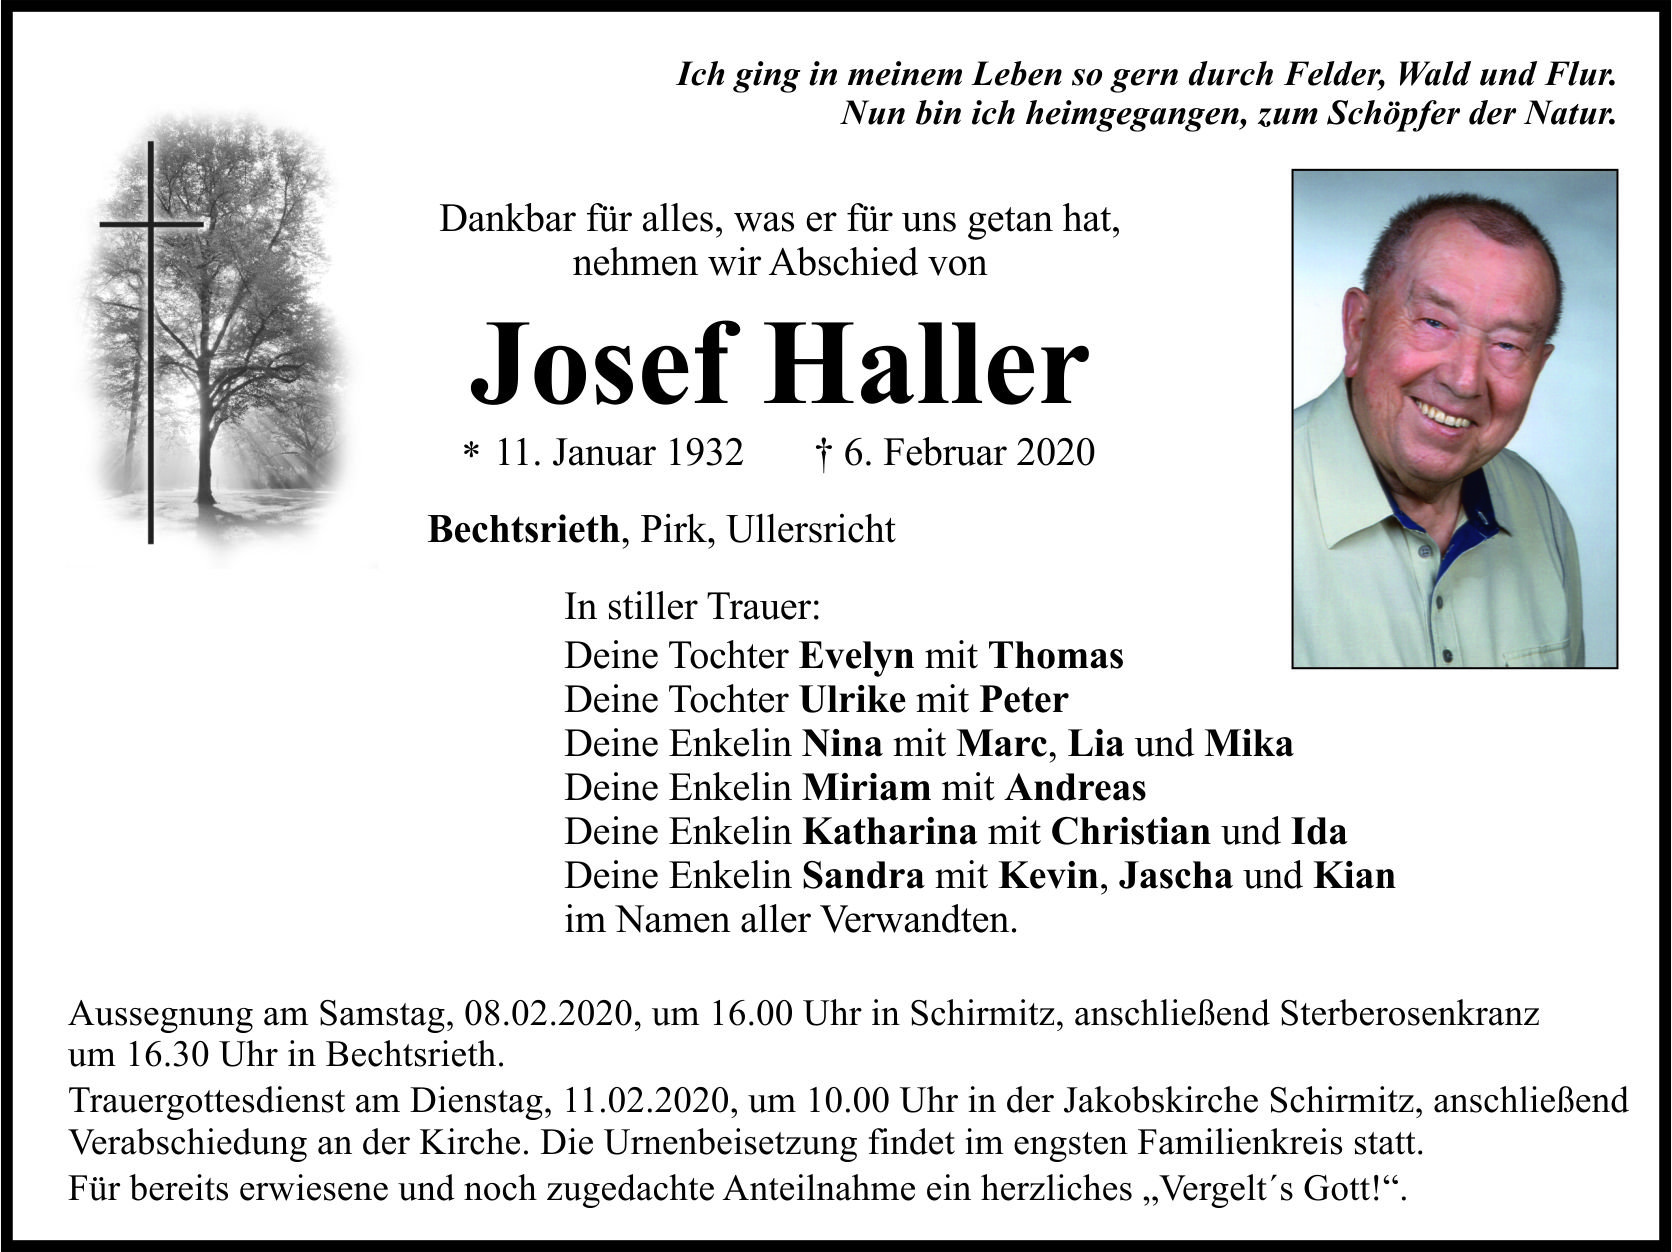 Traueranzeige Josef Haller, Bechtsrieth